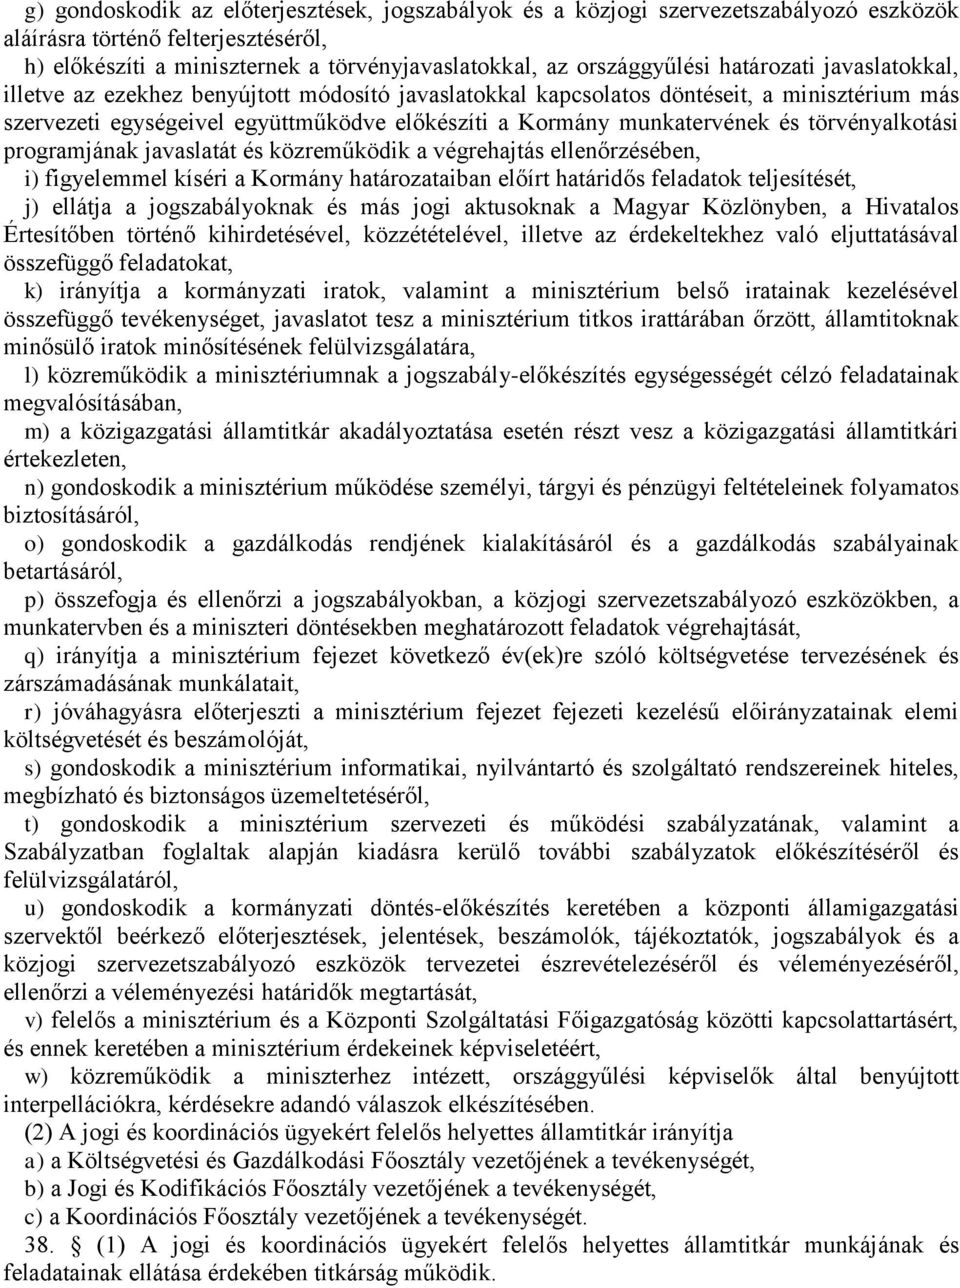 törvényalkotási programjának javaslatát és közreműködik a végrehajtás ellenőrzésében, i) figyelemmel kíséri a Kormány határozataiban előírt határidős feladatok teljesítését, j) ellátja a